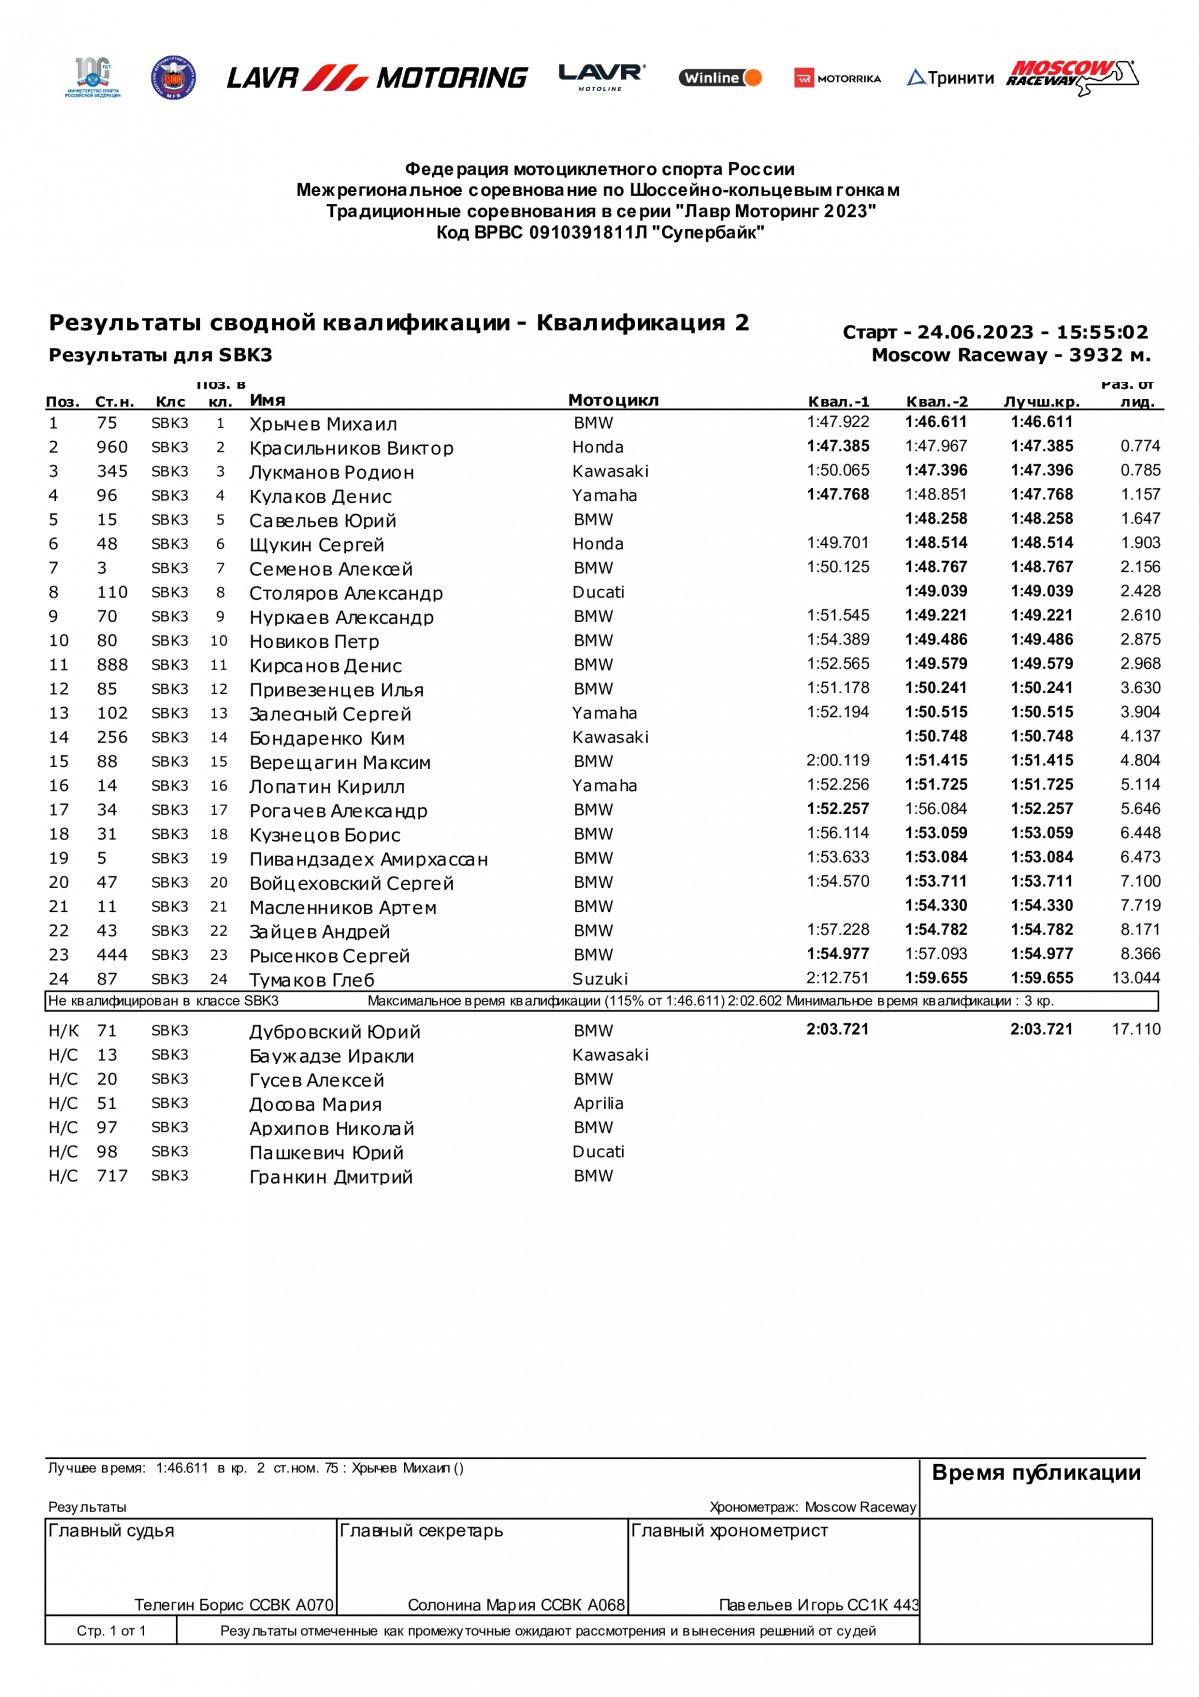 Результаты квалификации SBK3, Moscow Raceway, 2 этап